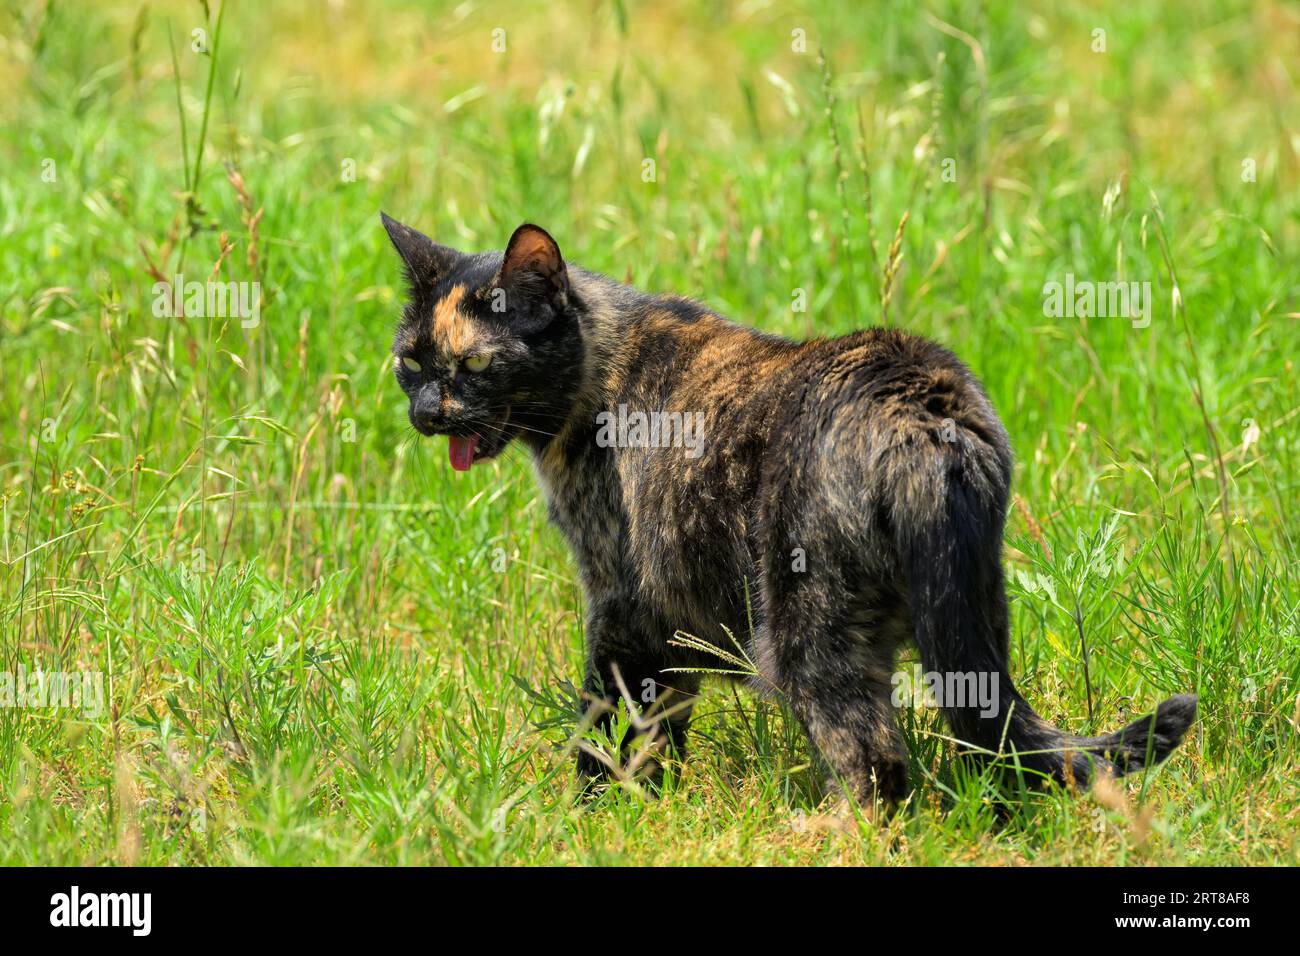 Gatto tortie arancione e nero che cammina in erba alta in una giornata termale calda, piantando Foto Stock